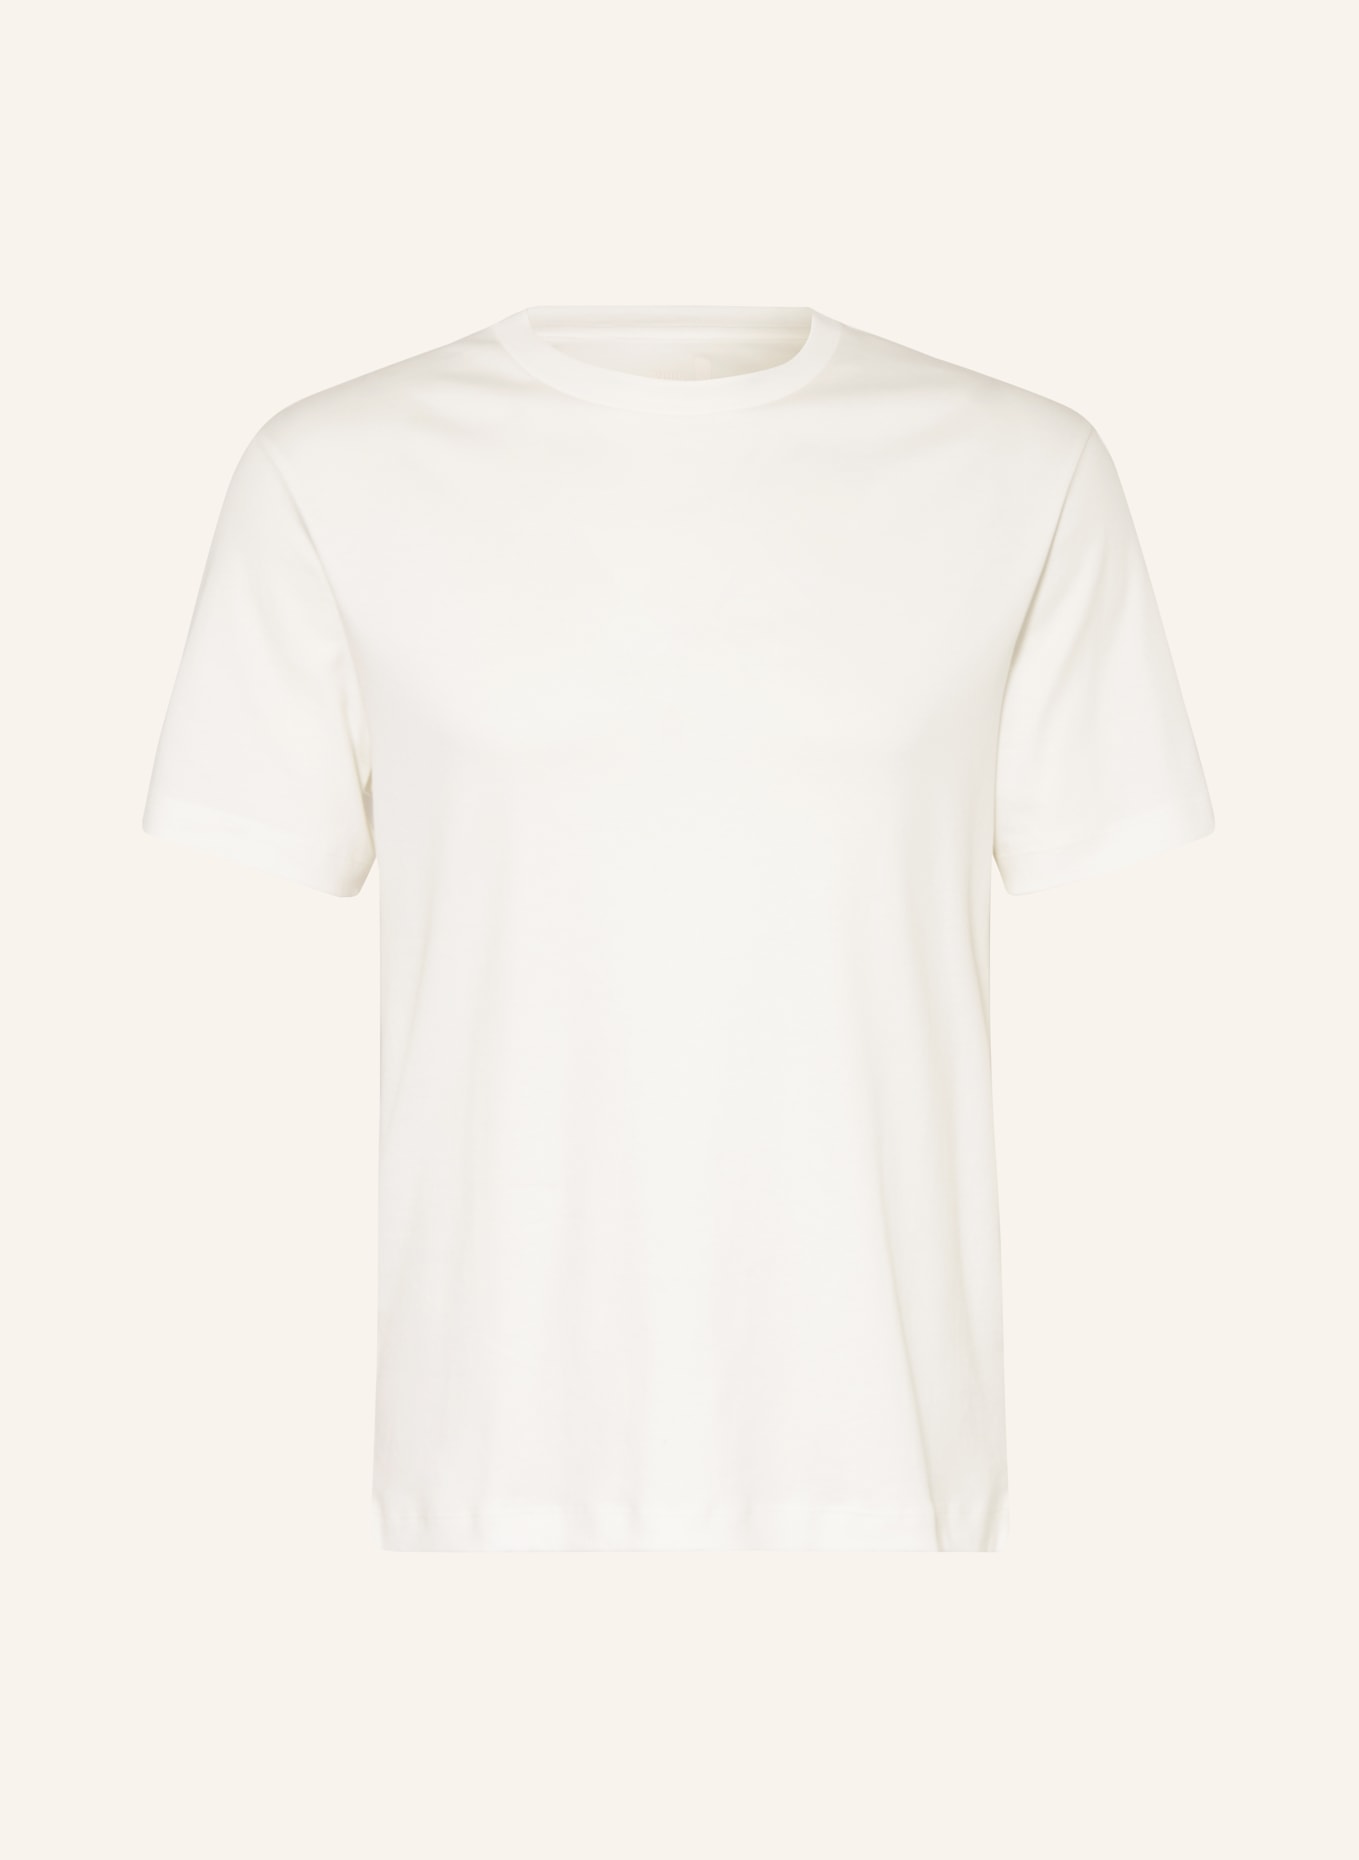 CG - CLUB of GENTS T-Shirt, Farbe: WEISS (Bild 1)